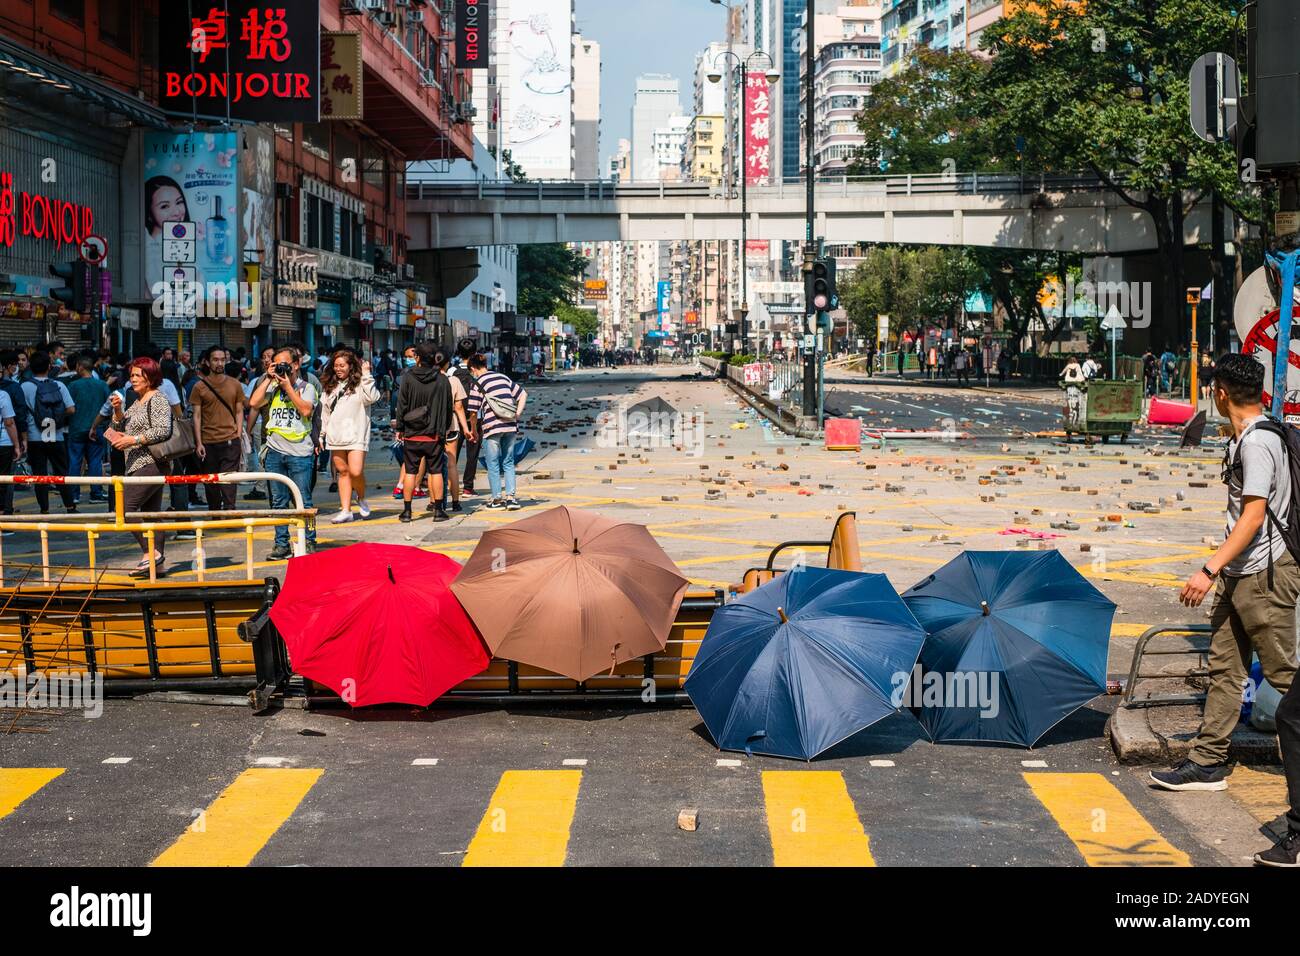 HongKong - Noviembre 18, 2019: Umbreallas, símbolo del 2019 Hongkong protestas, en barricadas en la carretera Nathan durante una protesta en Hongkong Foto de stock